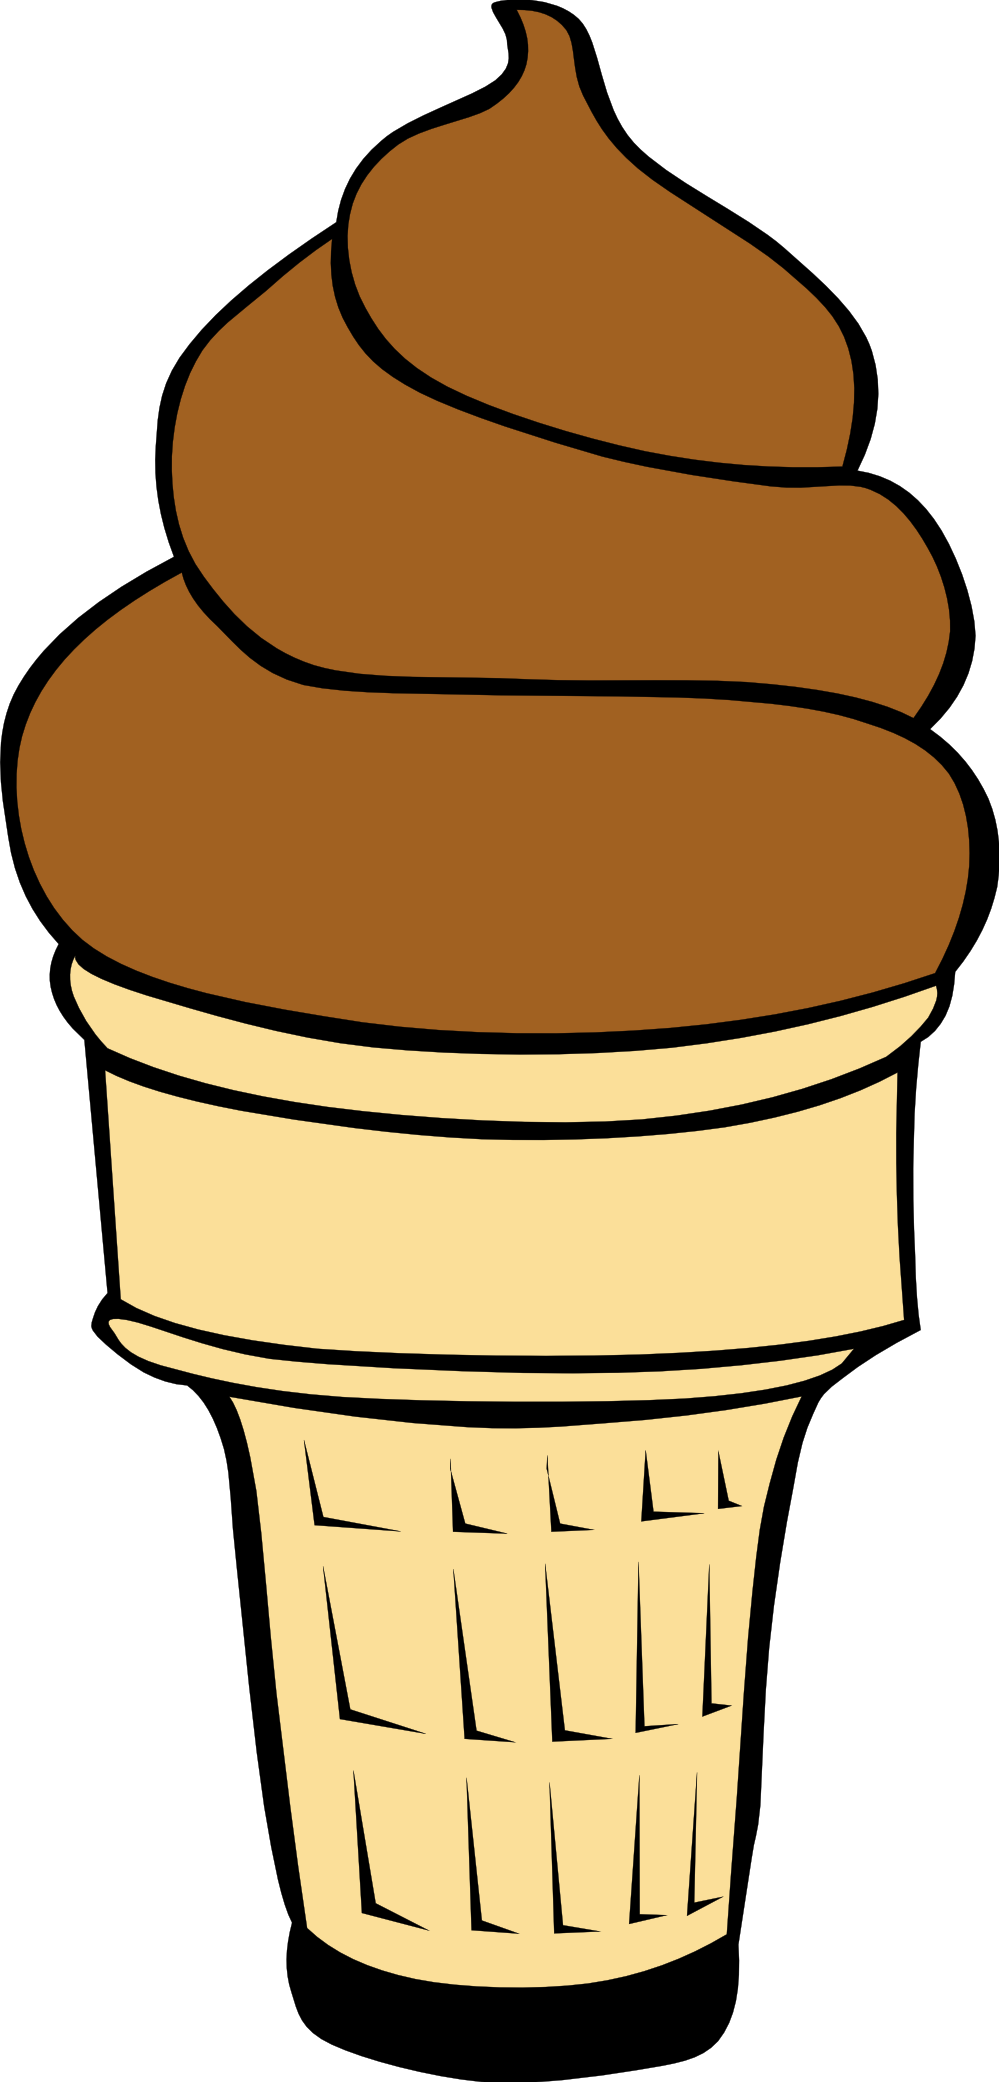 Ice cream cone clipart free images 7